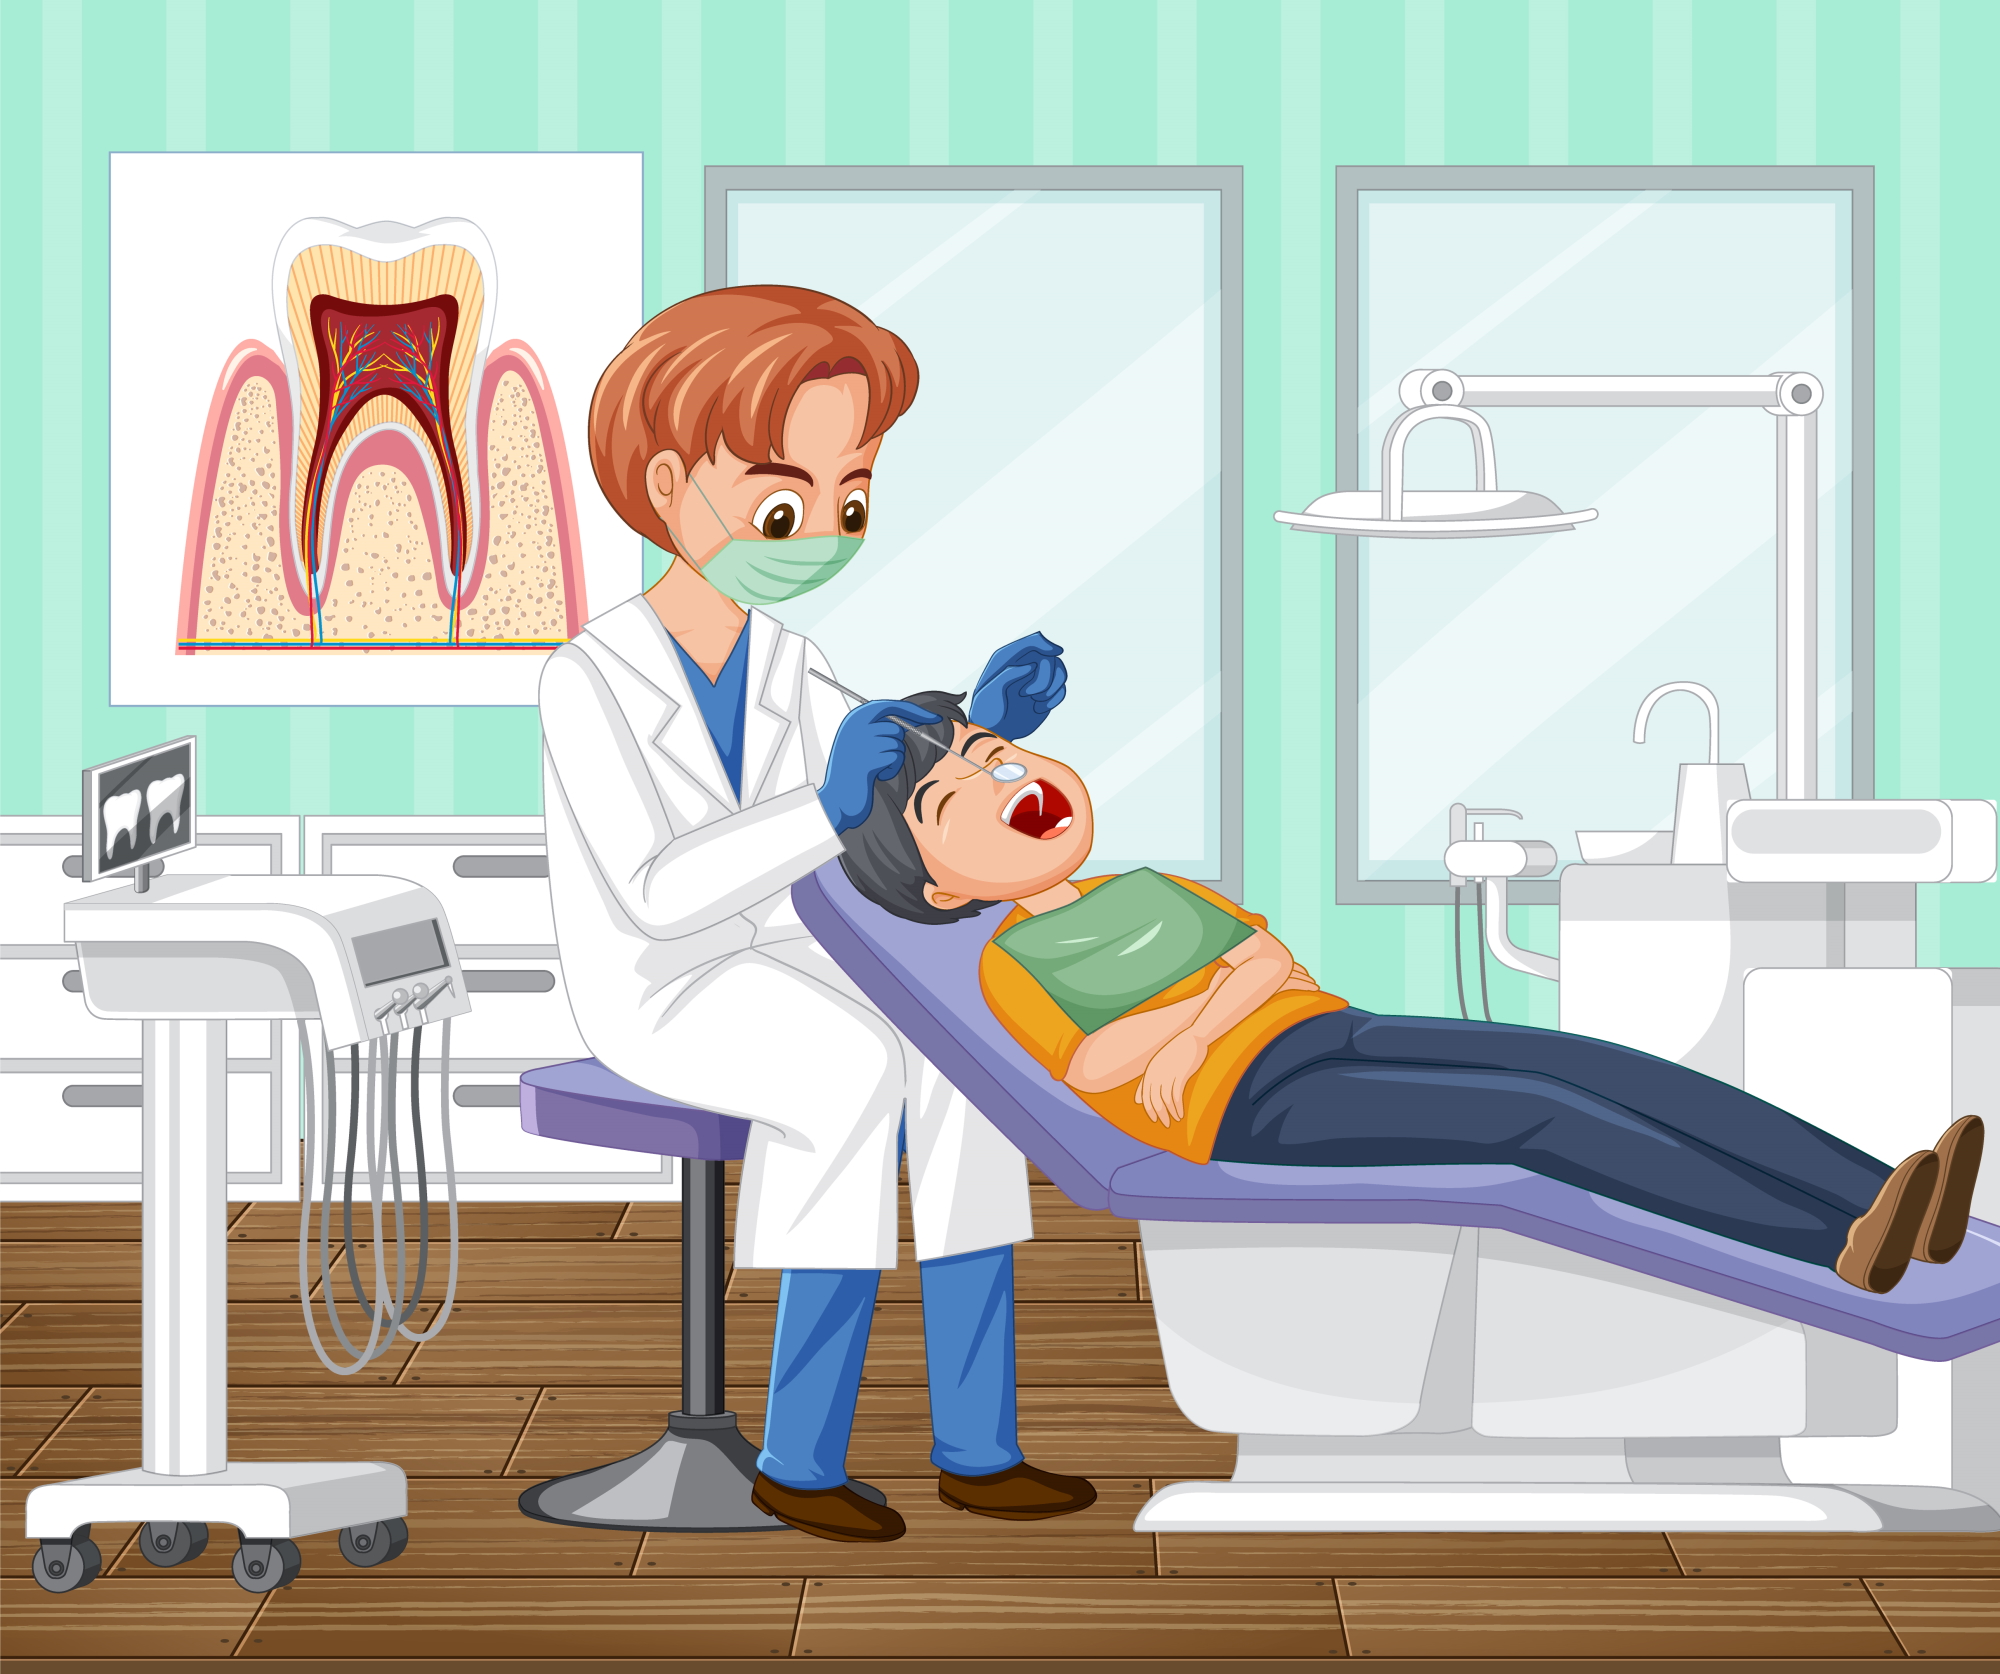 בחירת רופאת שיניים לילדים מומלצת